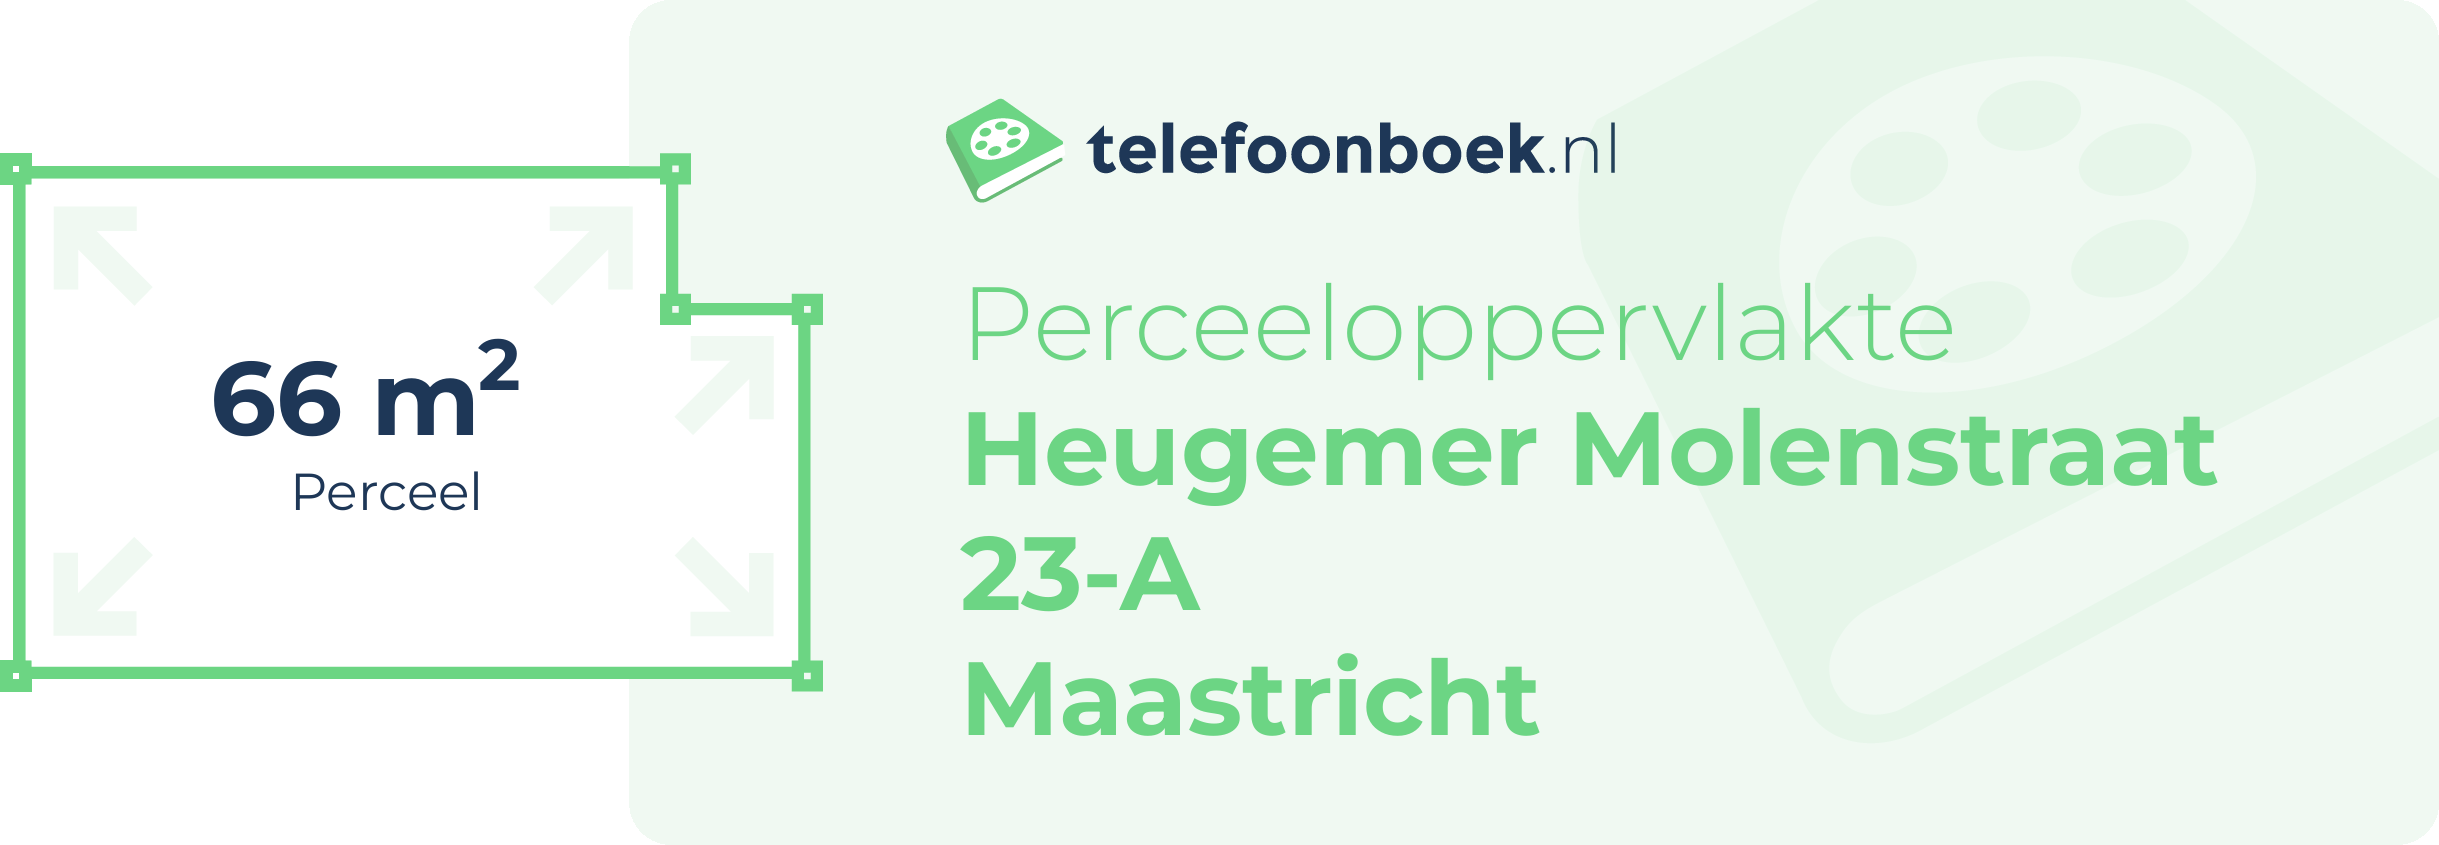 Perceeloppervlakte Heugemer Molenstraat 23-A Maastricht